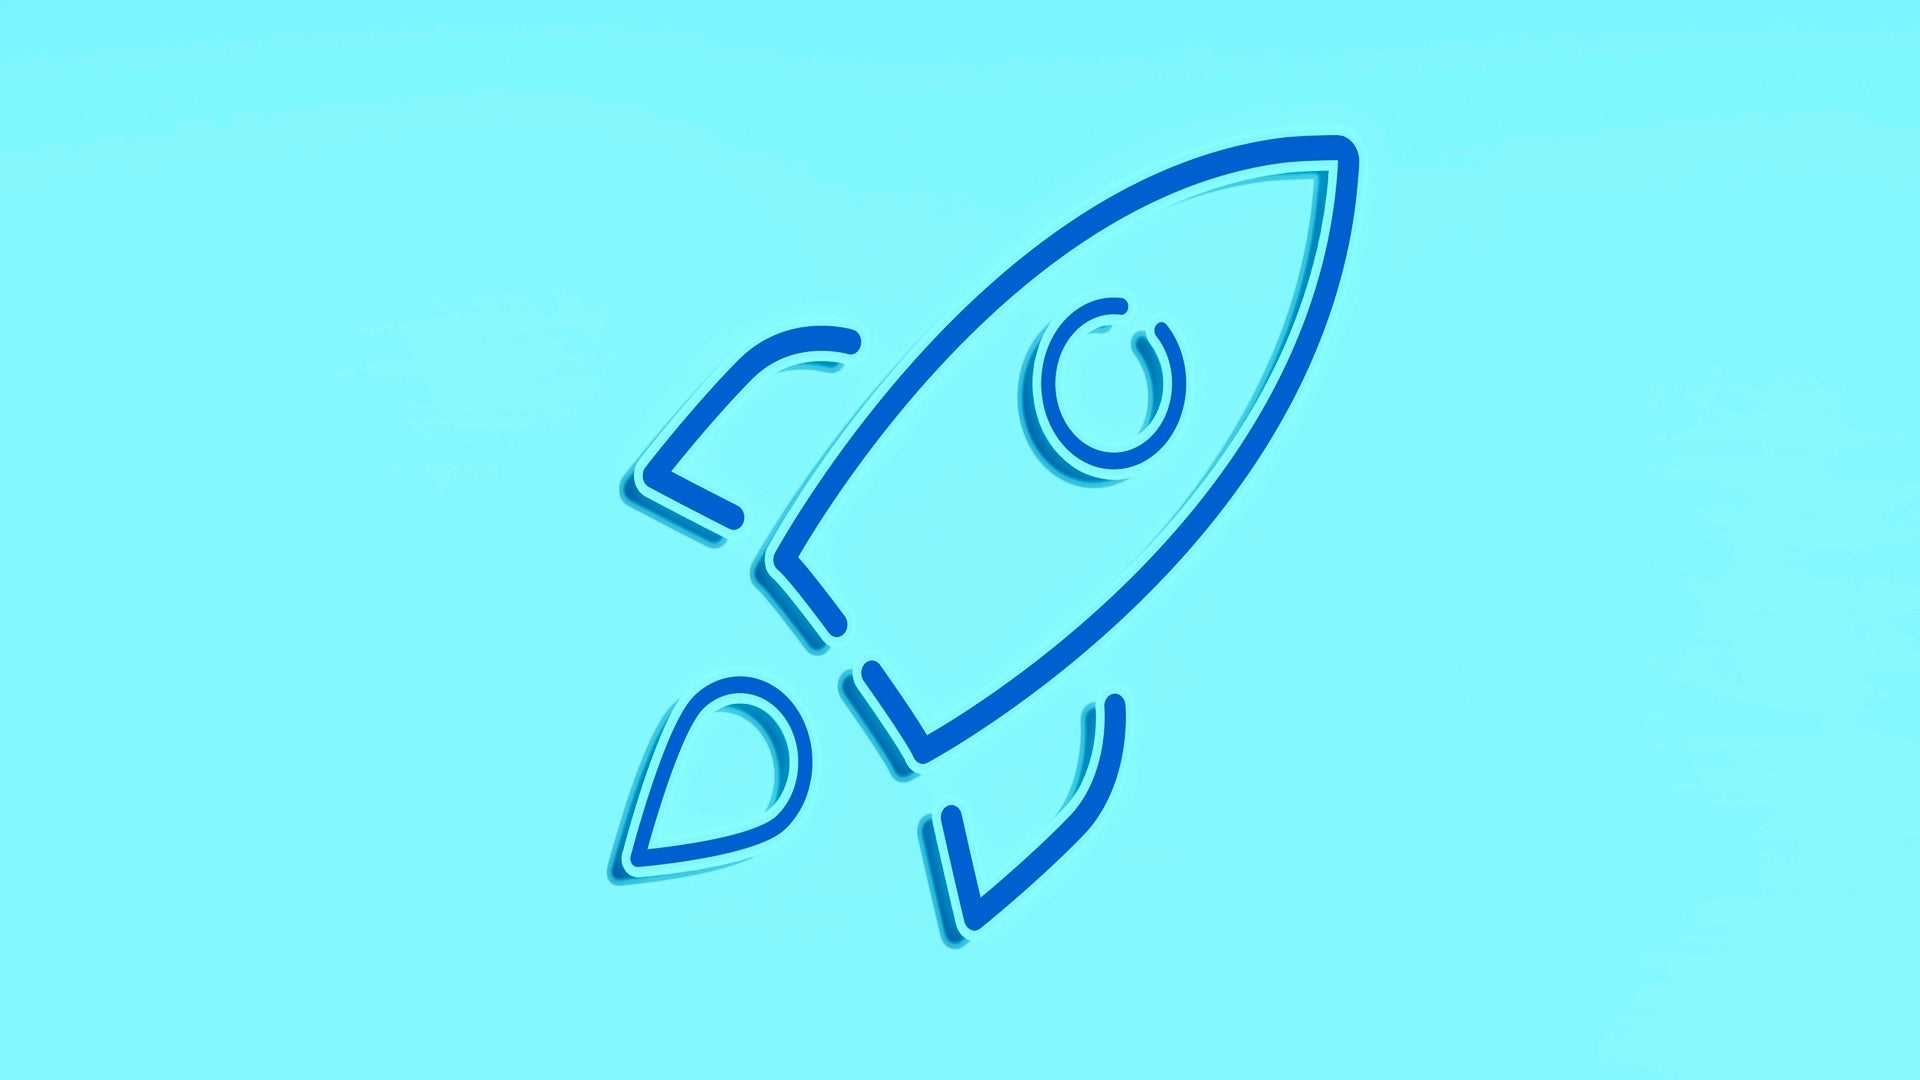 rocket concept for startup